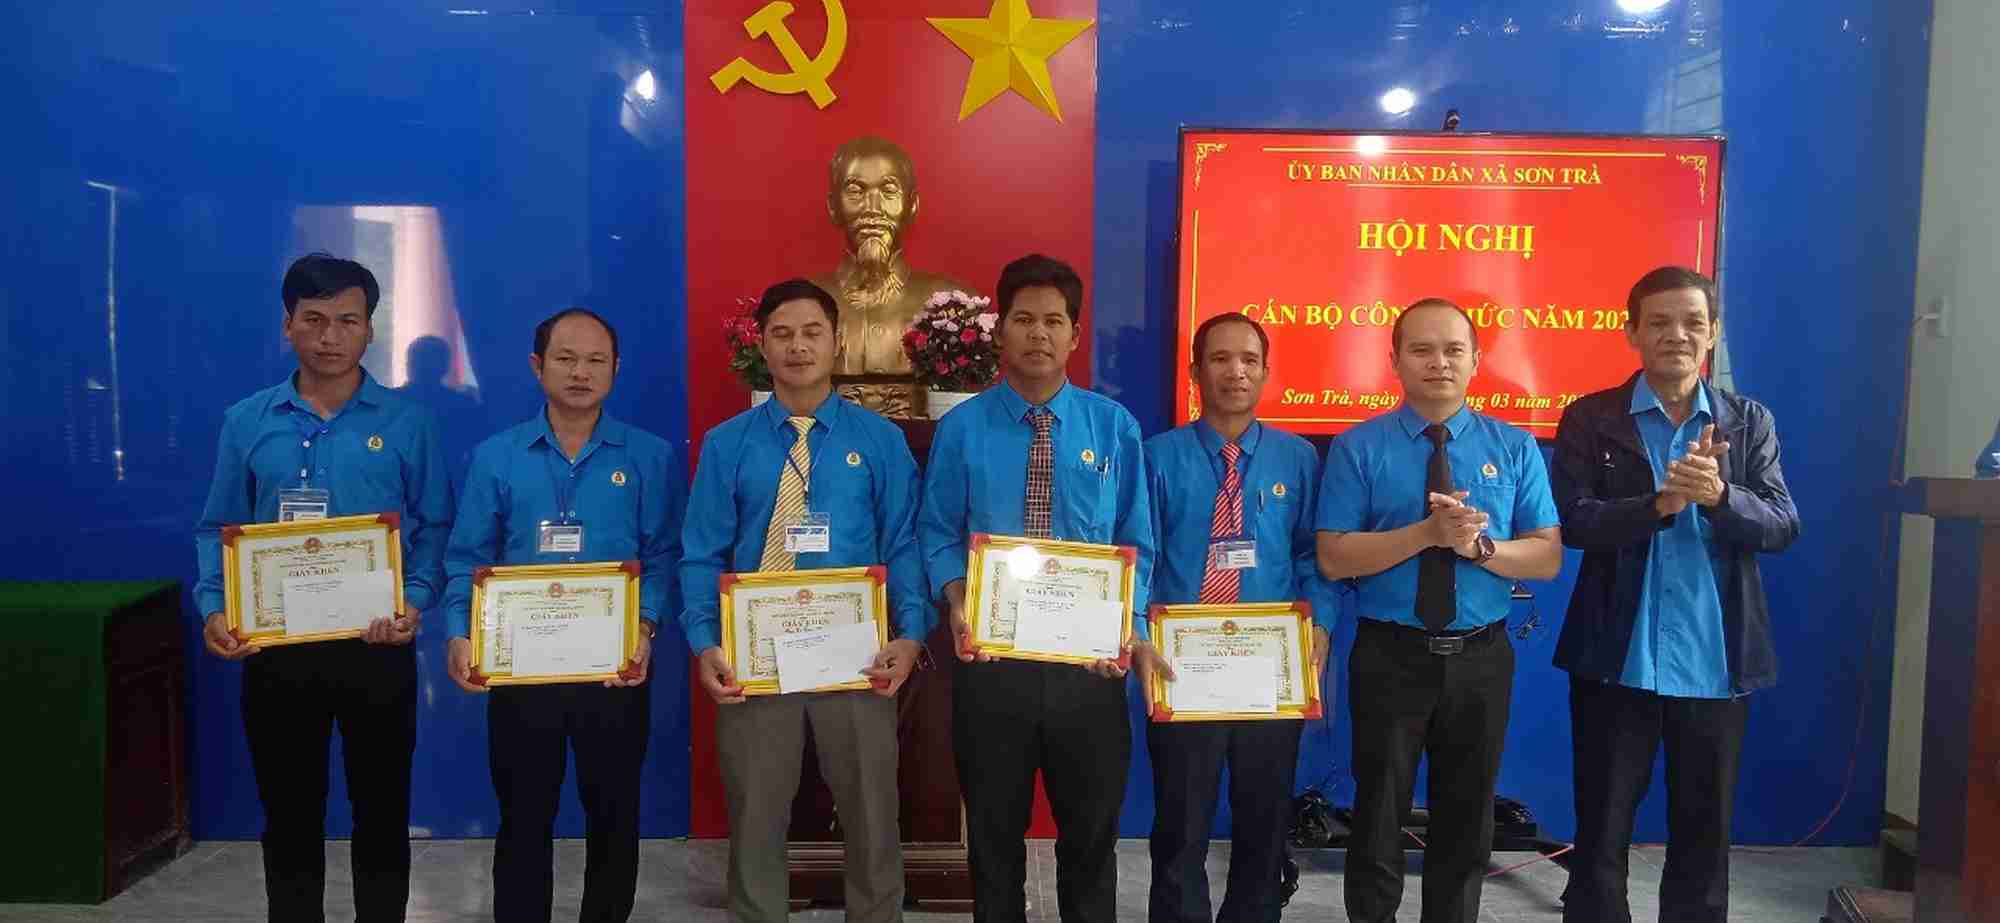 Xã Sơn Trà tổ chức Hội nghị Cán bộ, Công chức, người lao động